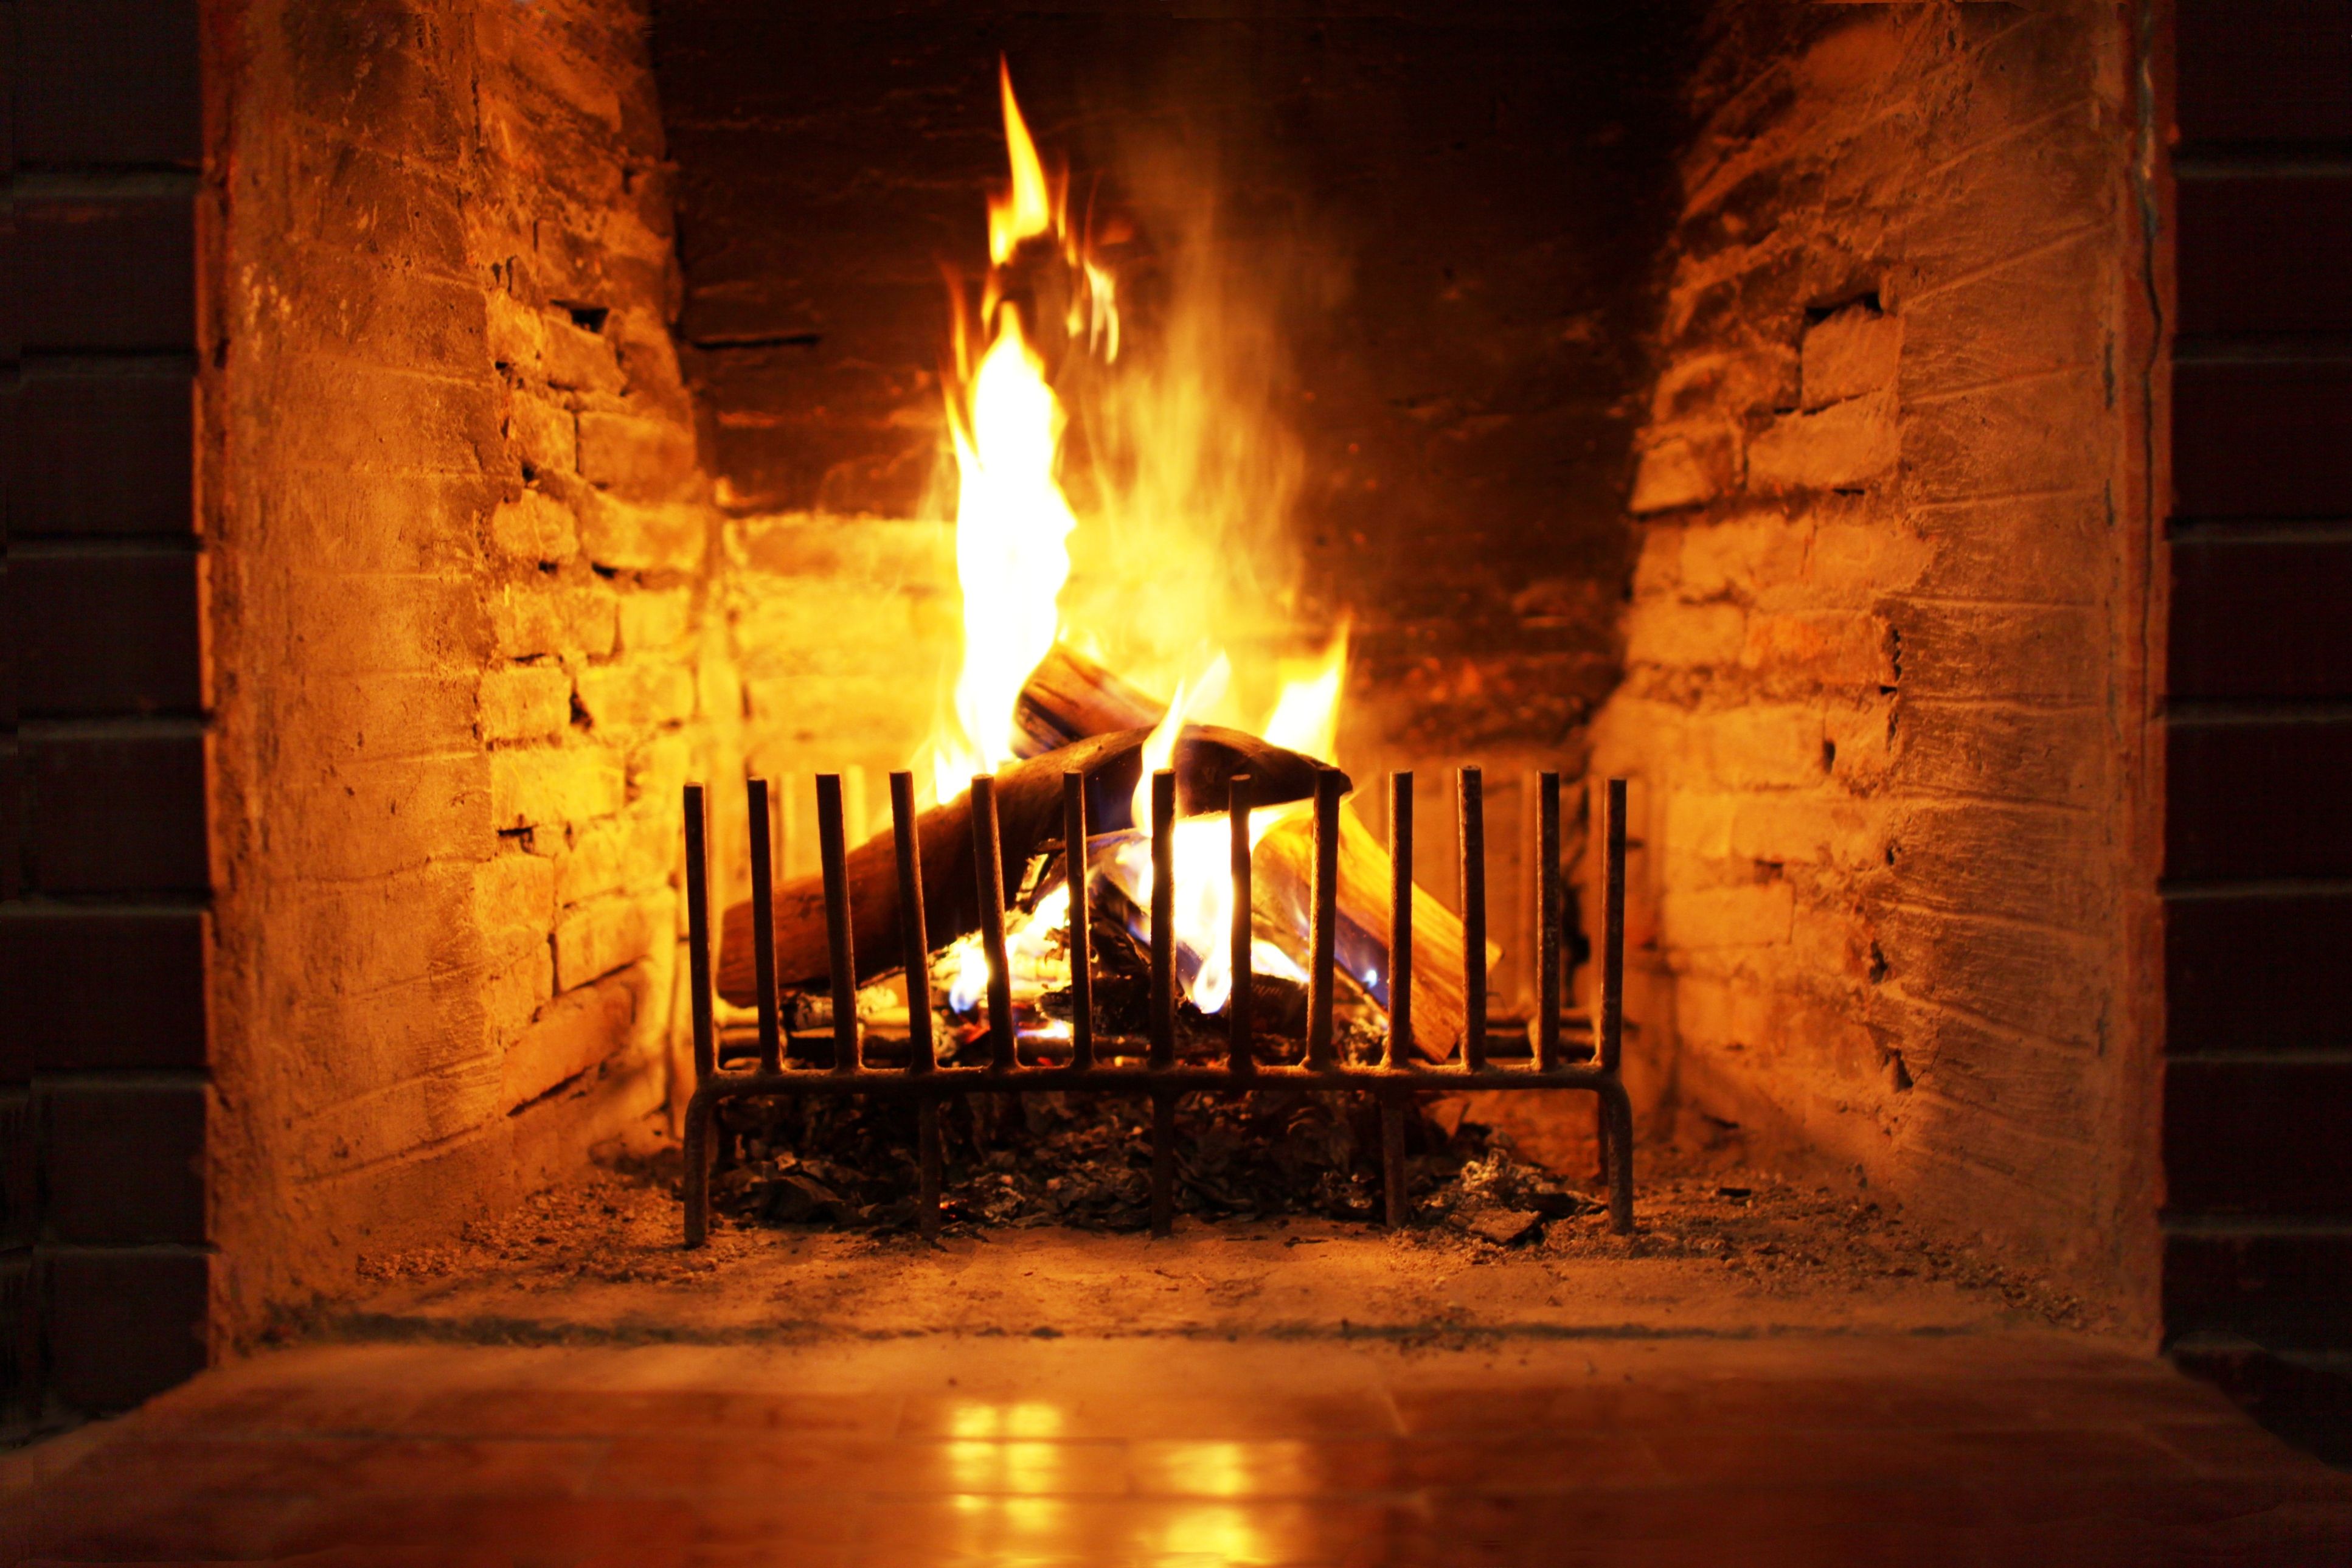 Fireplace Wallpaper. Fireplace Wallpaper, Christmas Fireplace Wallpaper and Romantic Fireplace Wallpaper